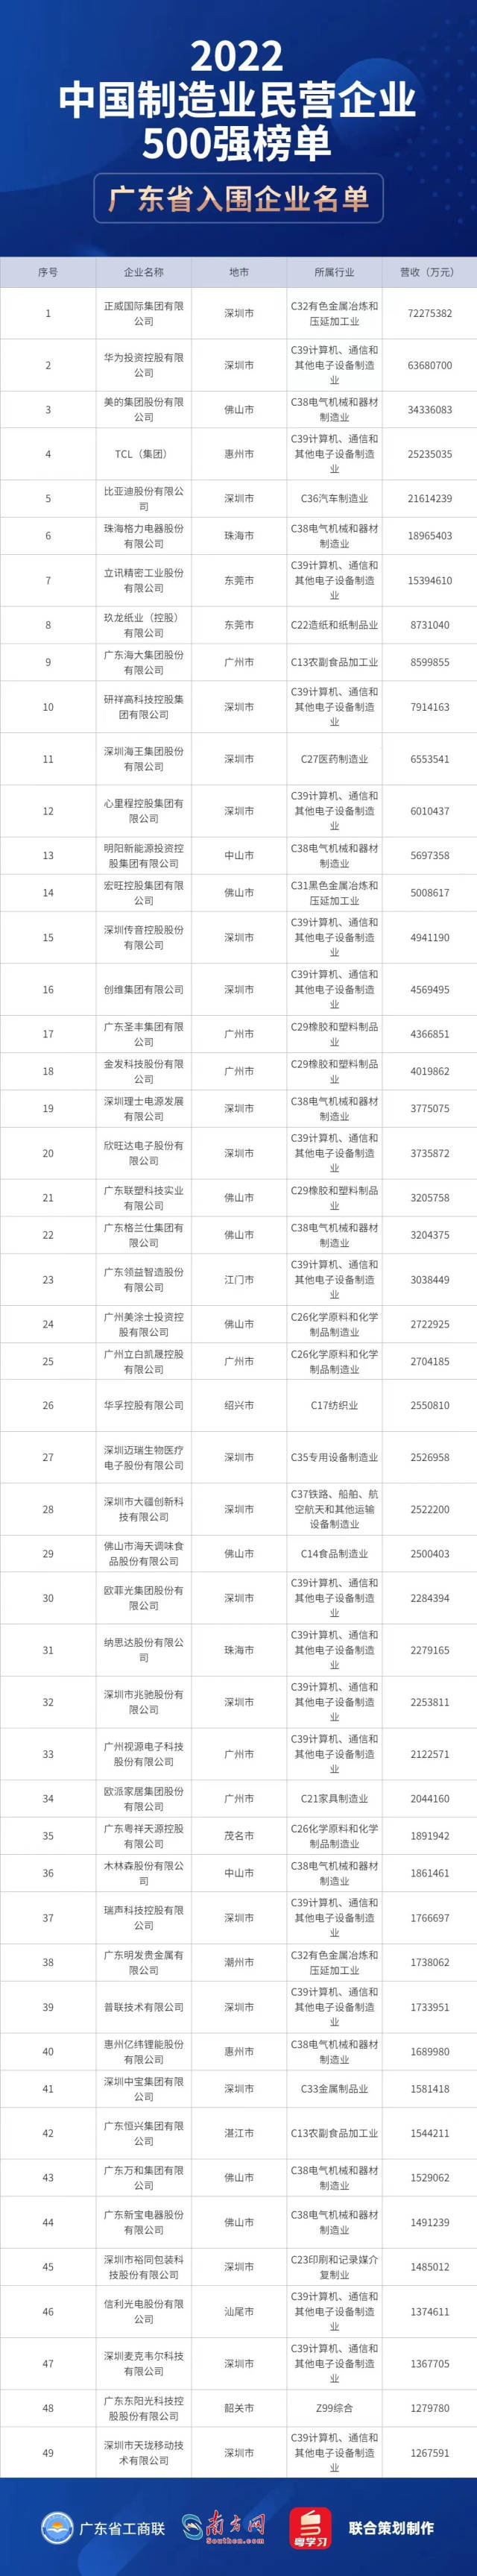 2022中国制造业民营企业500强榜单